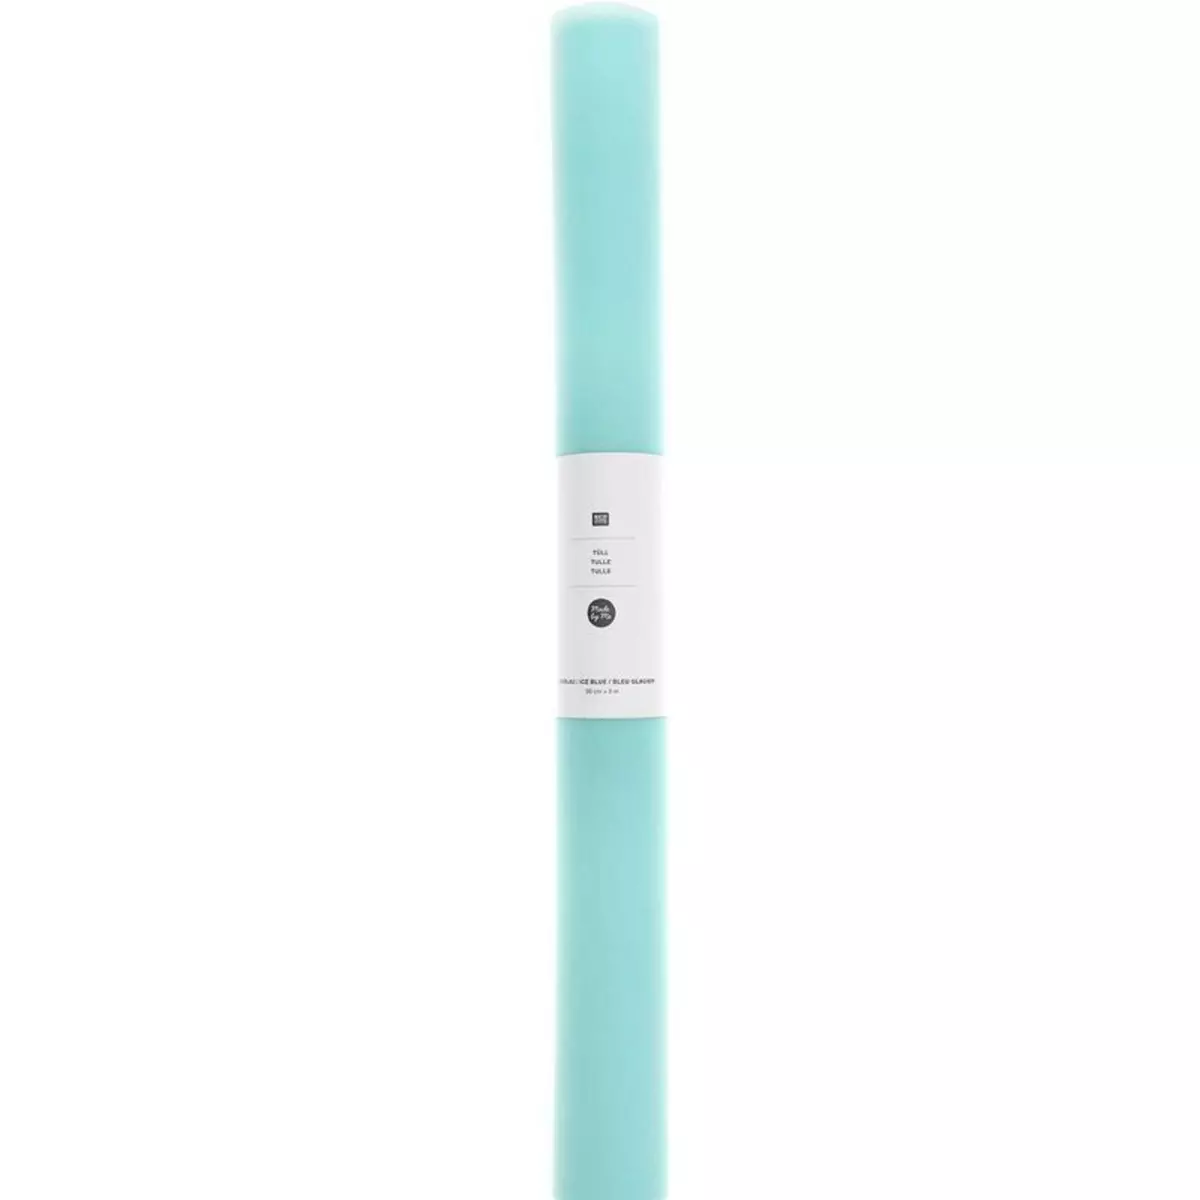 RICO DESIGN Rouleau de tulle 50 cm x 5 m - bleu clair